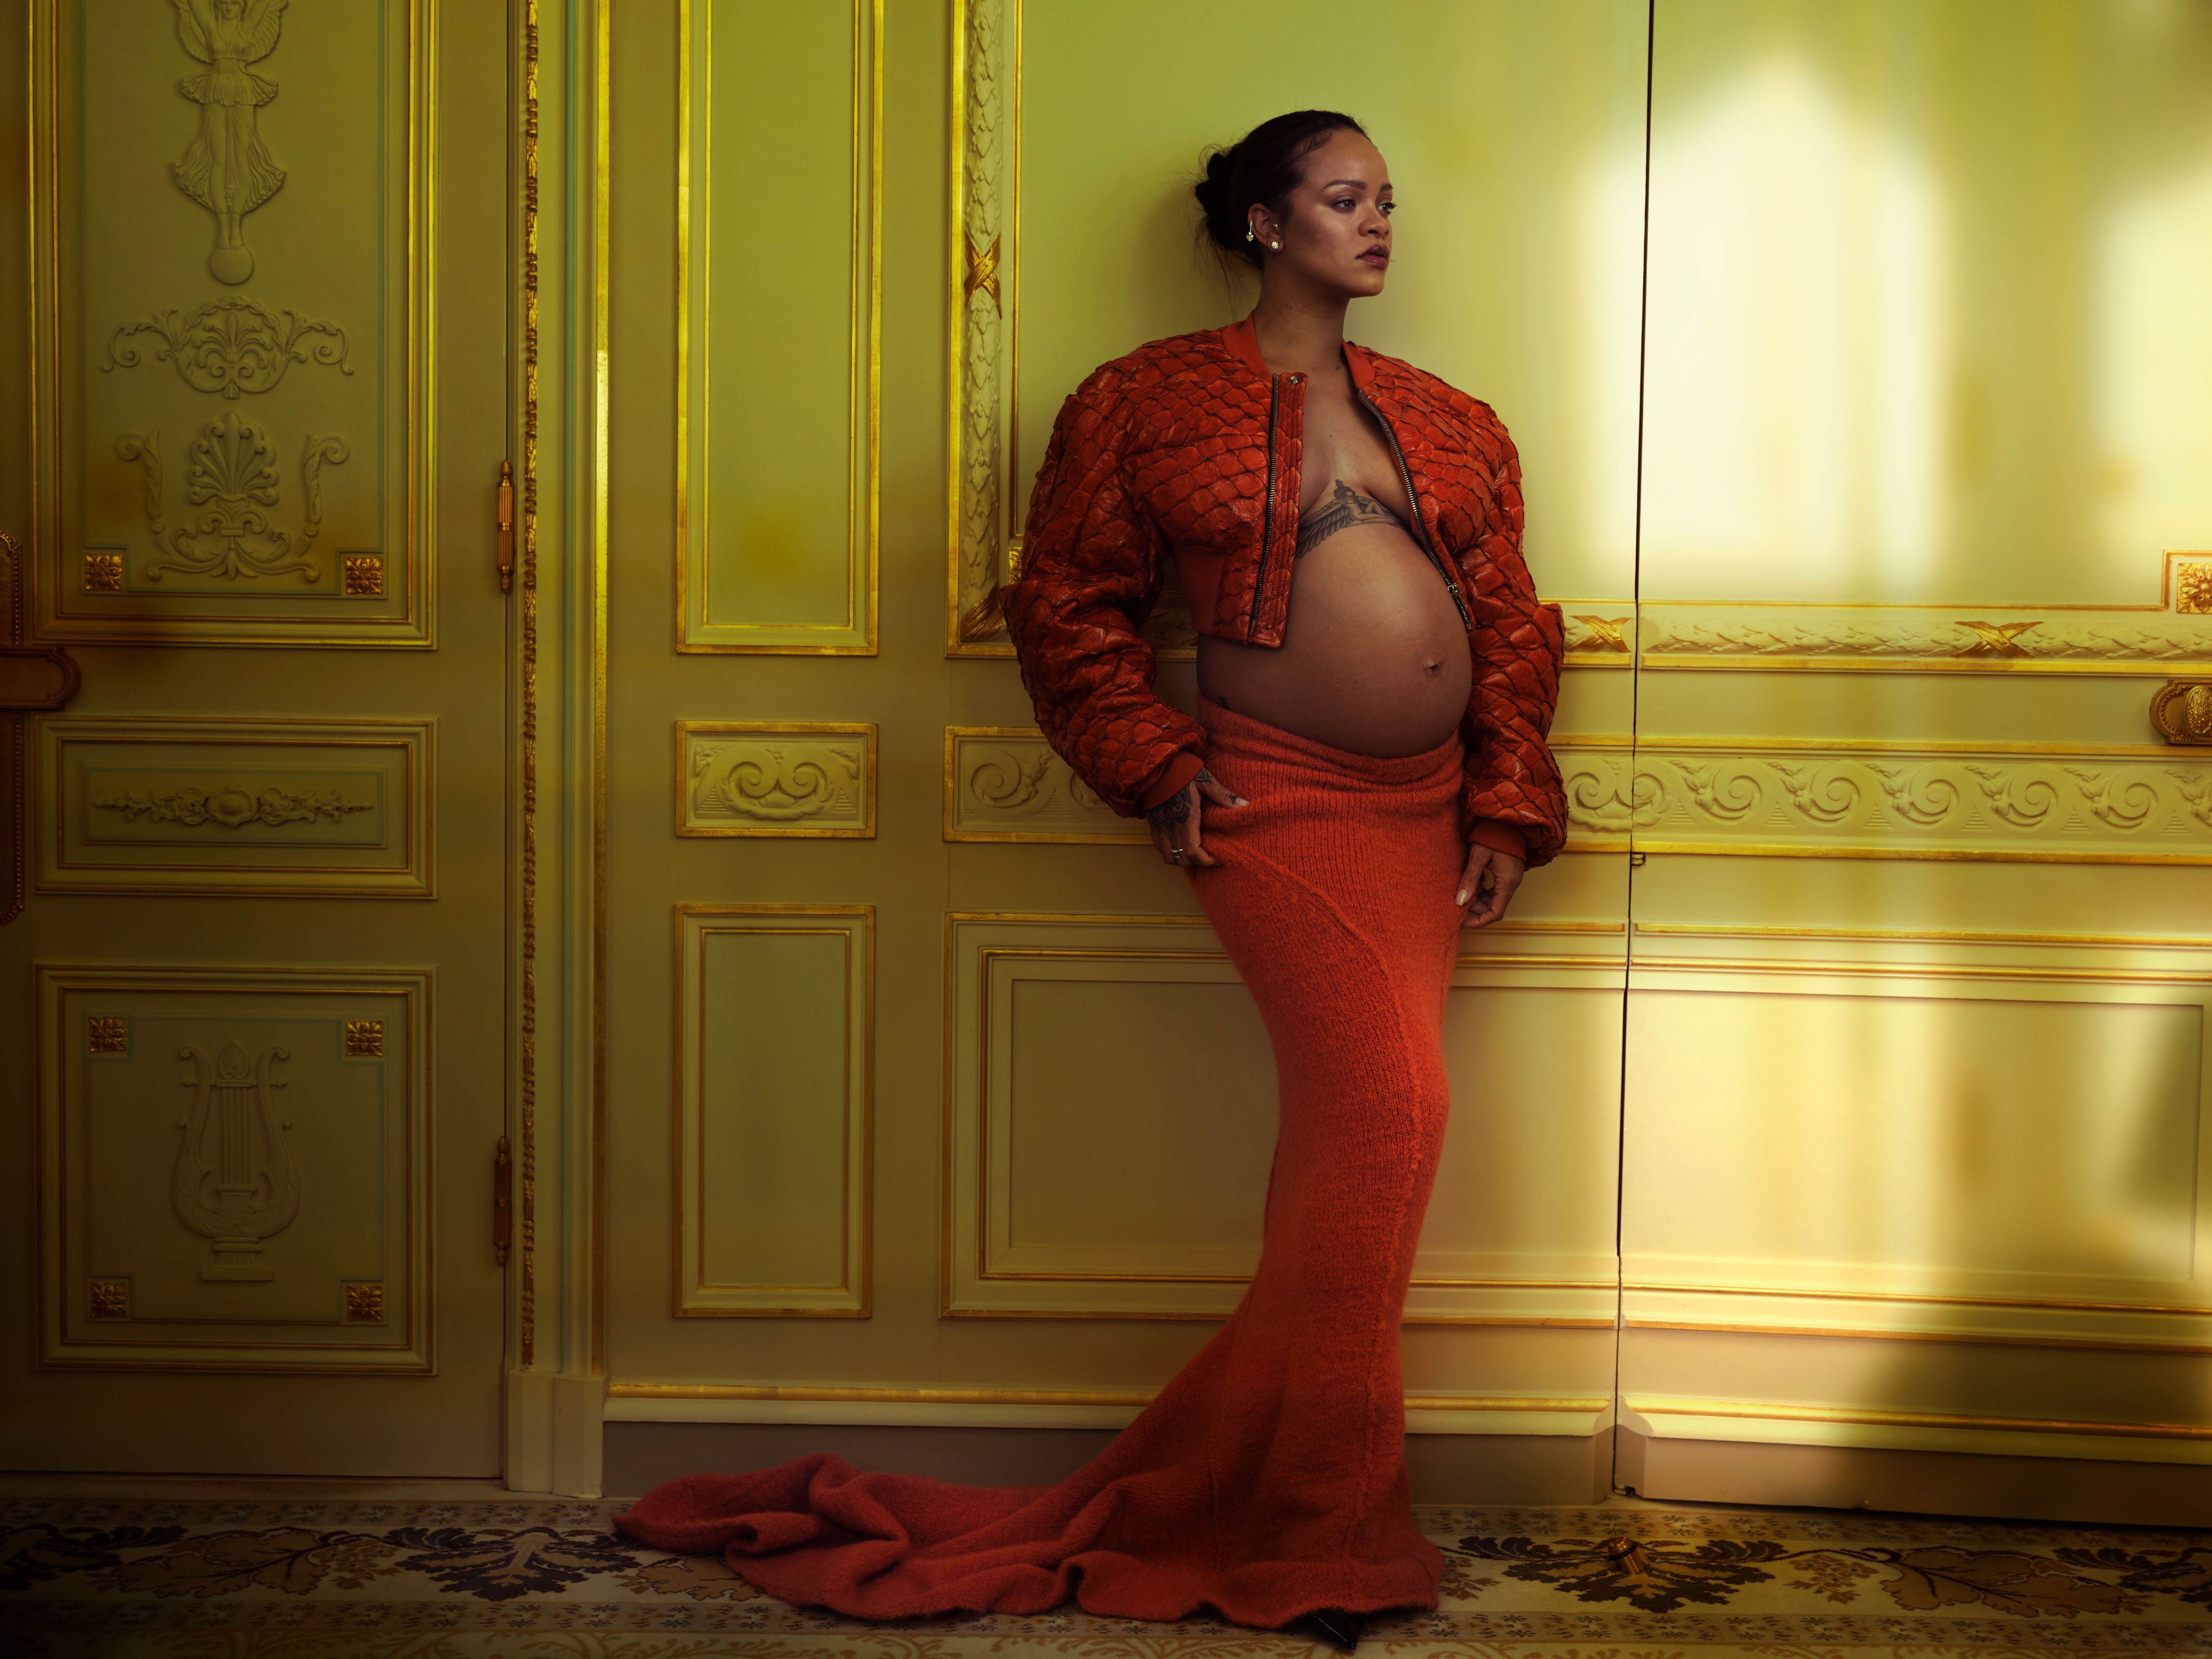 Rihanna, baby bump à l'air, elle ose le total look denim au défilé Louis  Vuitton – Grazia